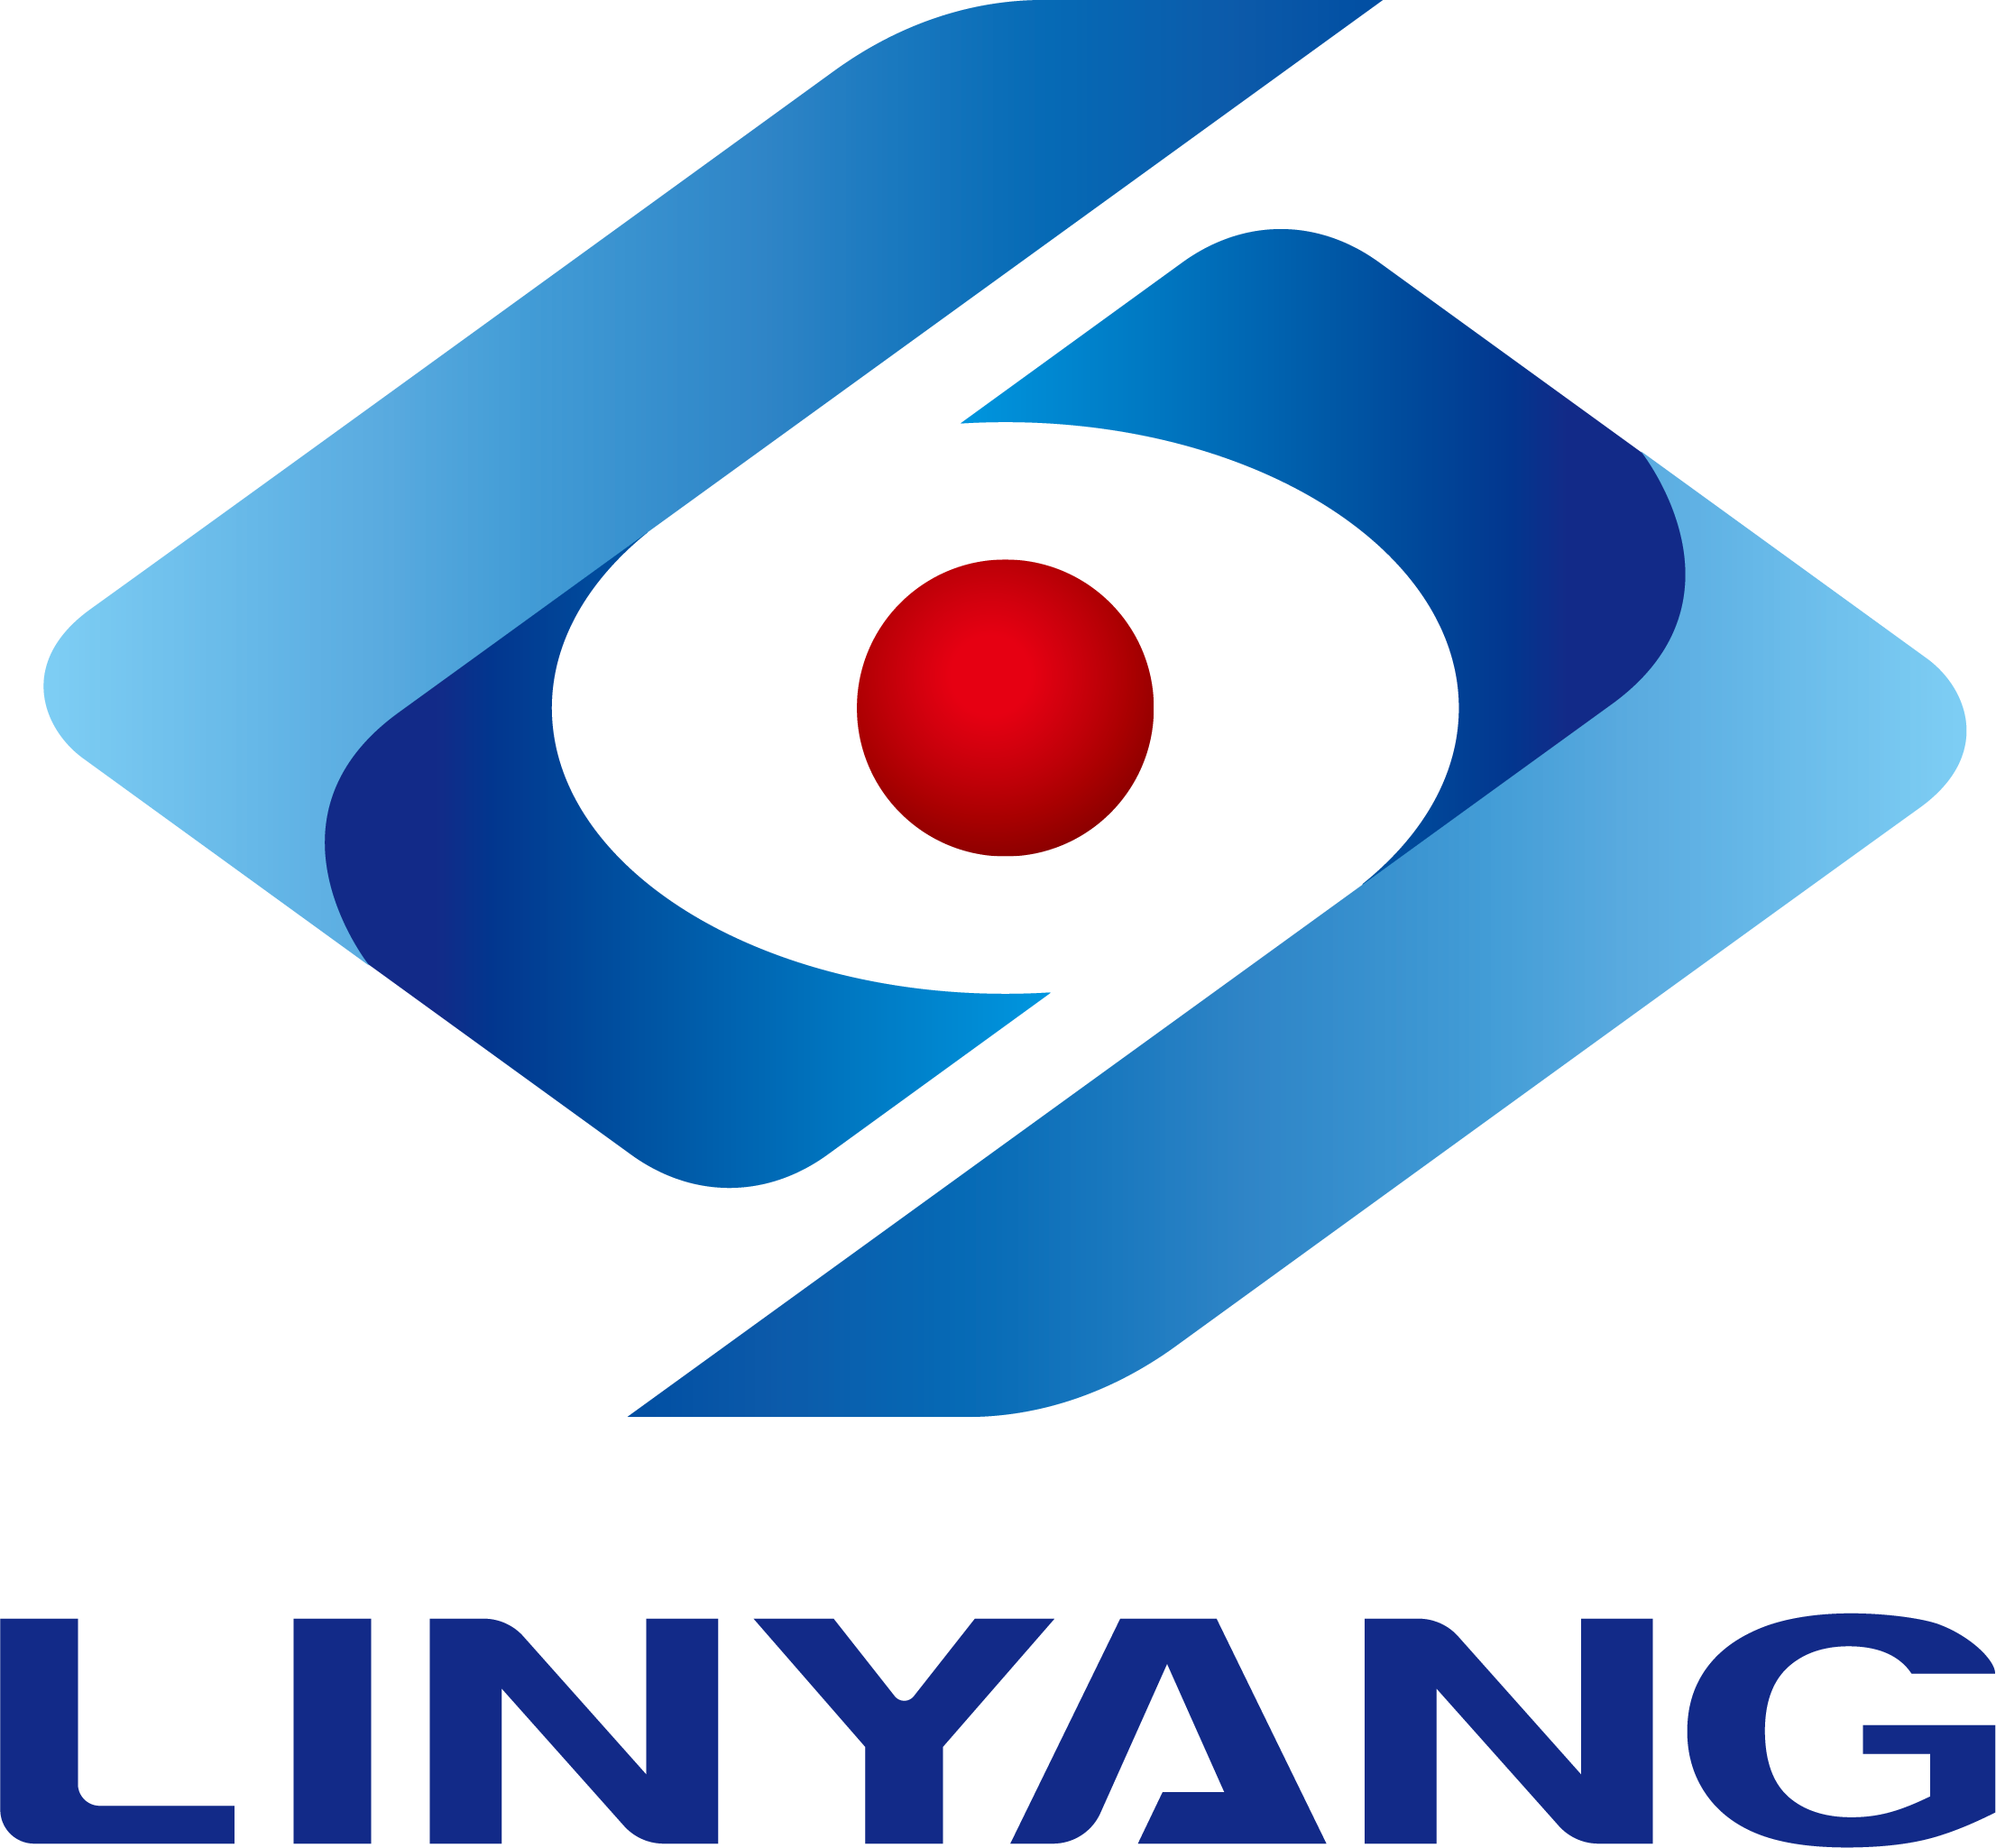 Linyang sai heakskiidu enam kui 1 GW akumulatiivsetele fotoelektriliste projektidele